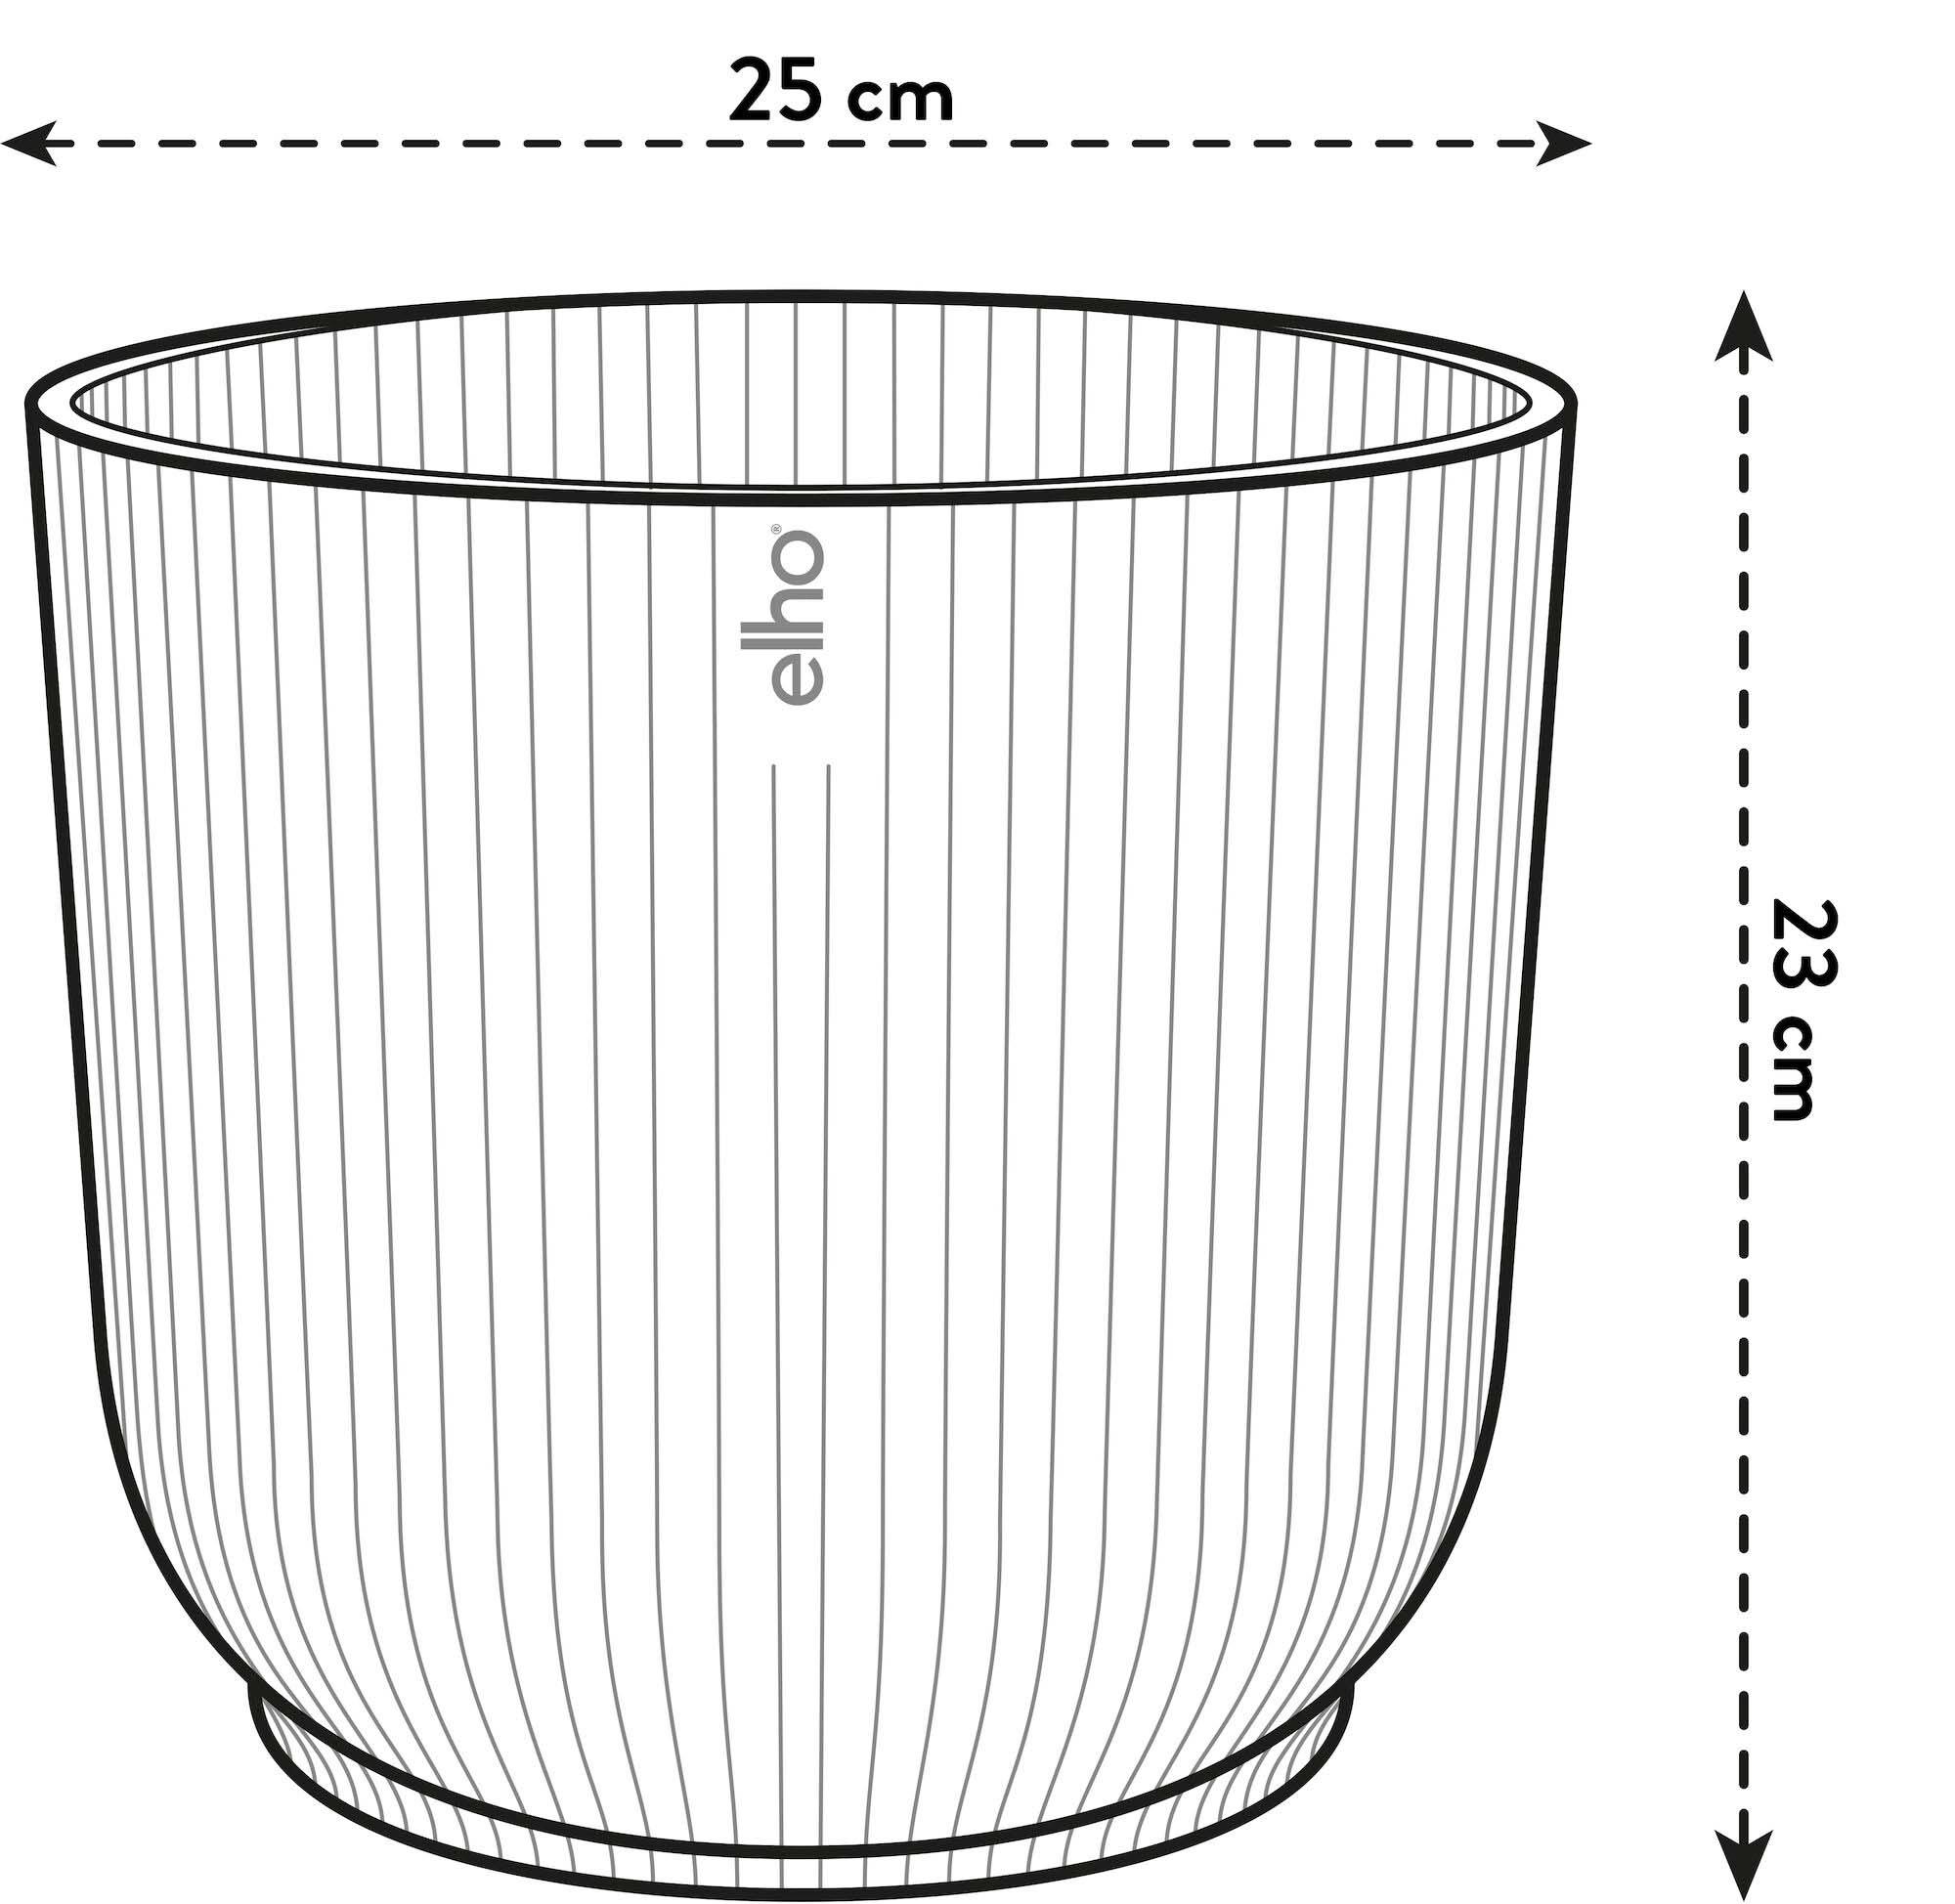 Vaso da interno Elho Vibes Fold Round bianco Ø 25 cm